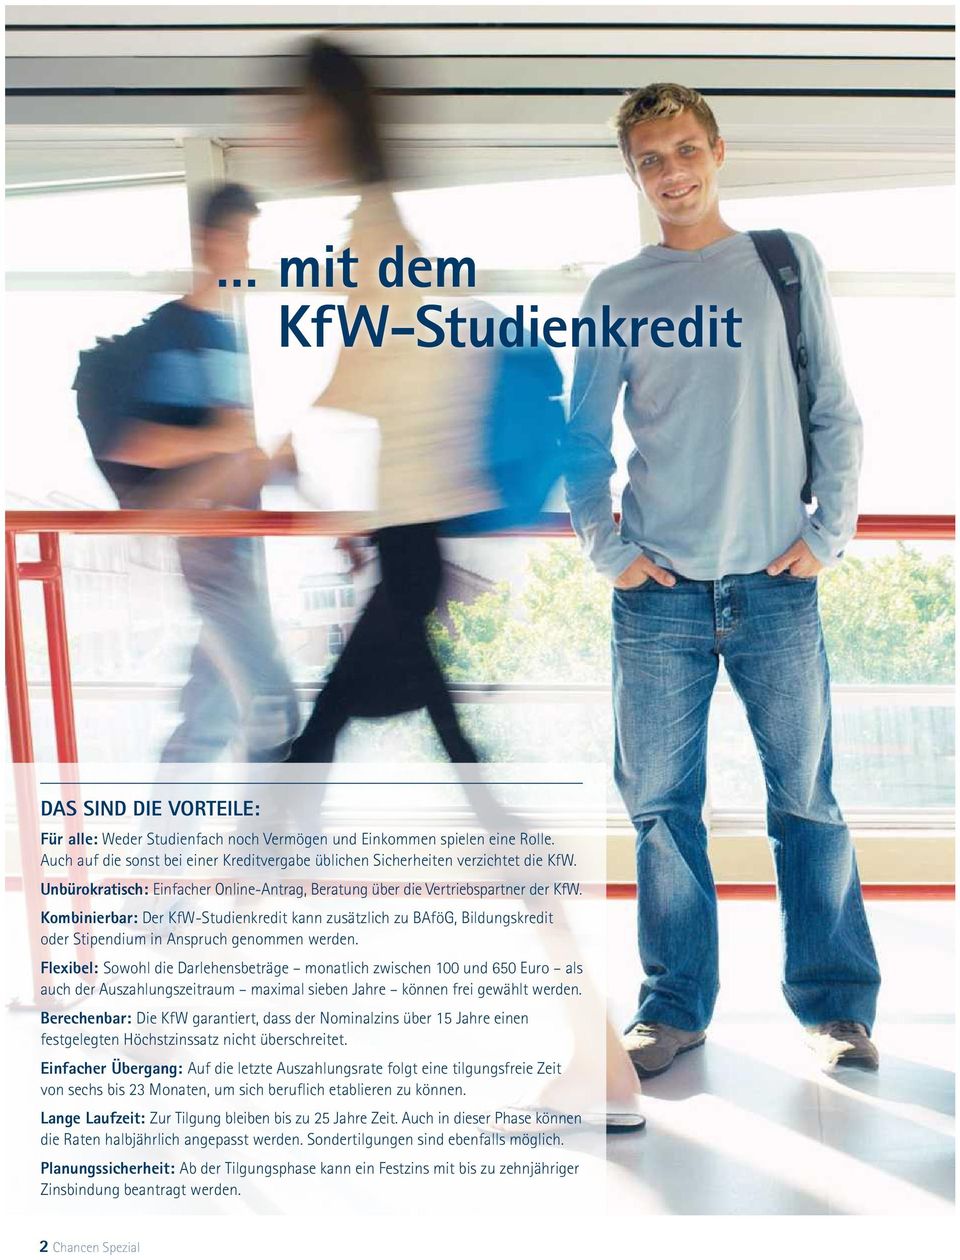 Kombinierbar: Der KfW-Studienkredit kann zusätzlich zu BAföG, Bildungskredit oder Stipendium in Anspruch genommen werden.